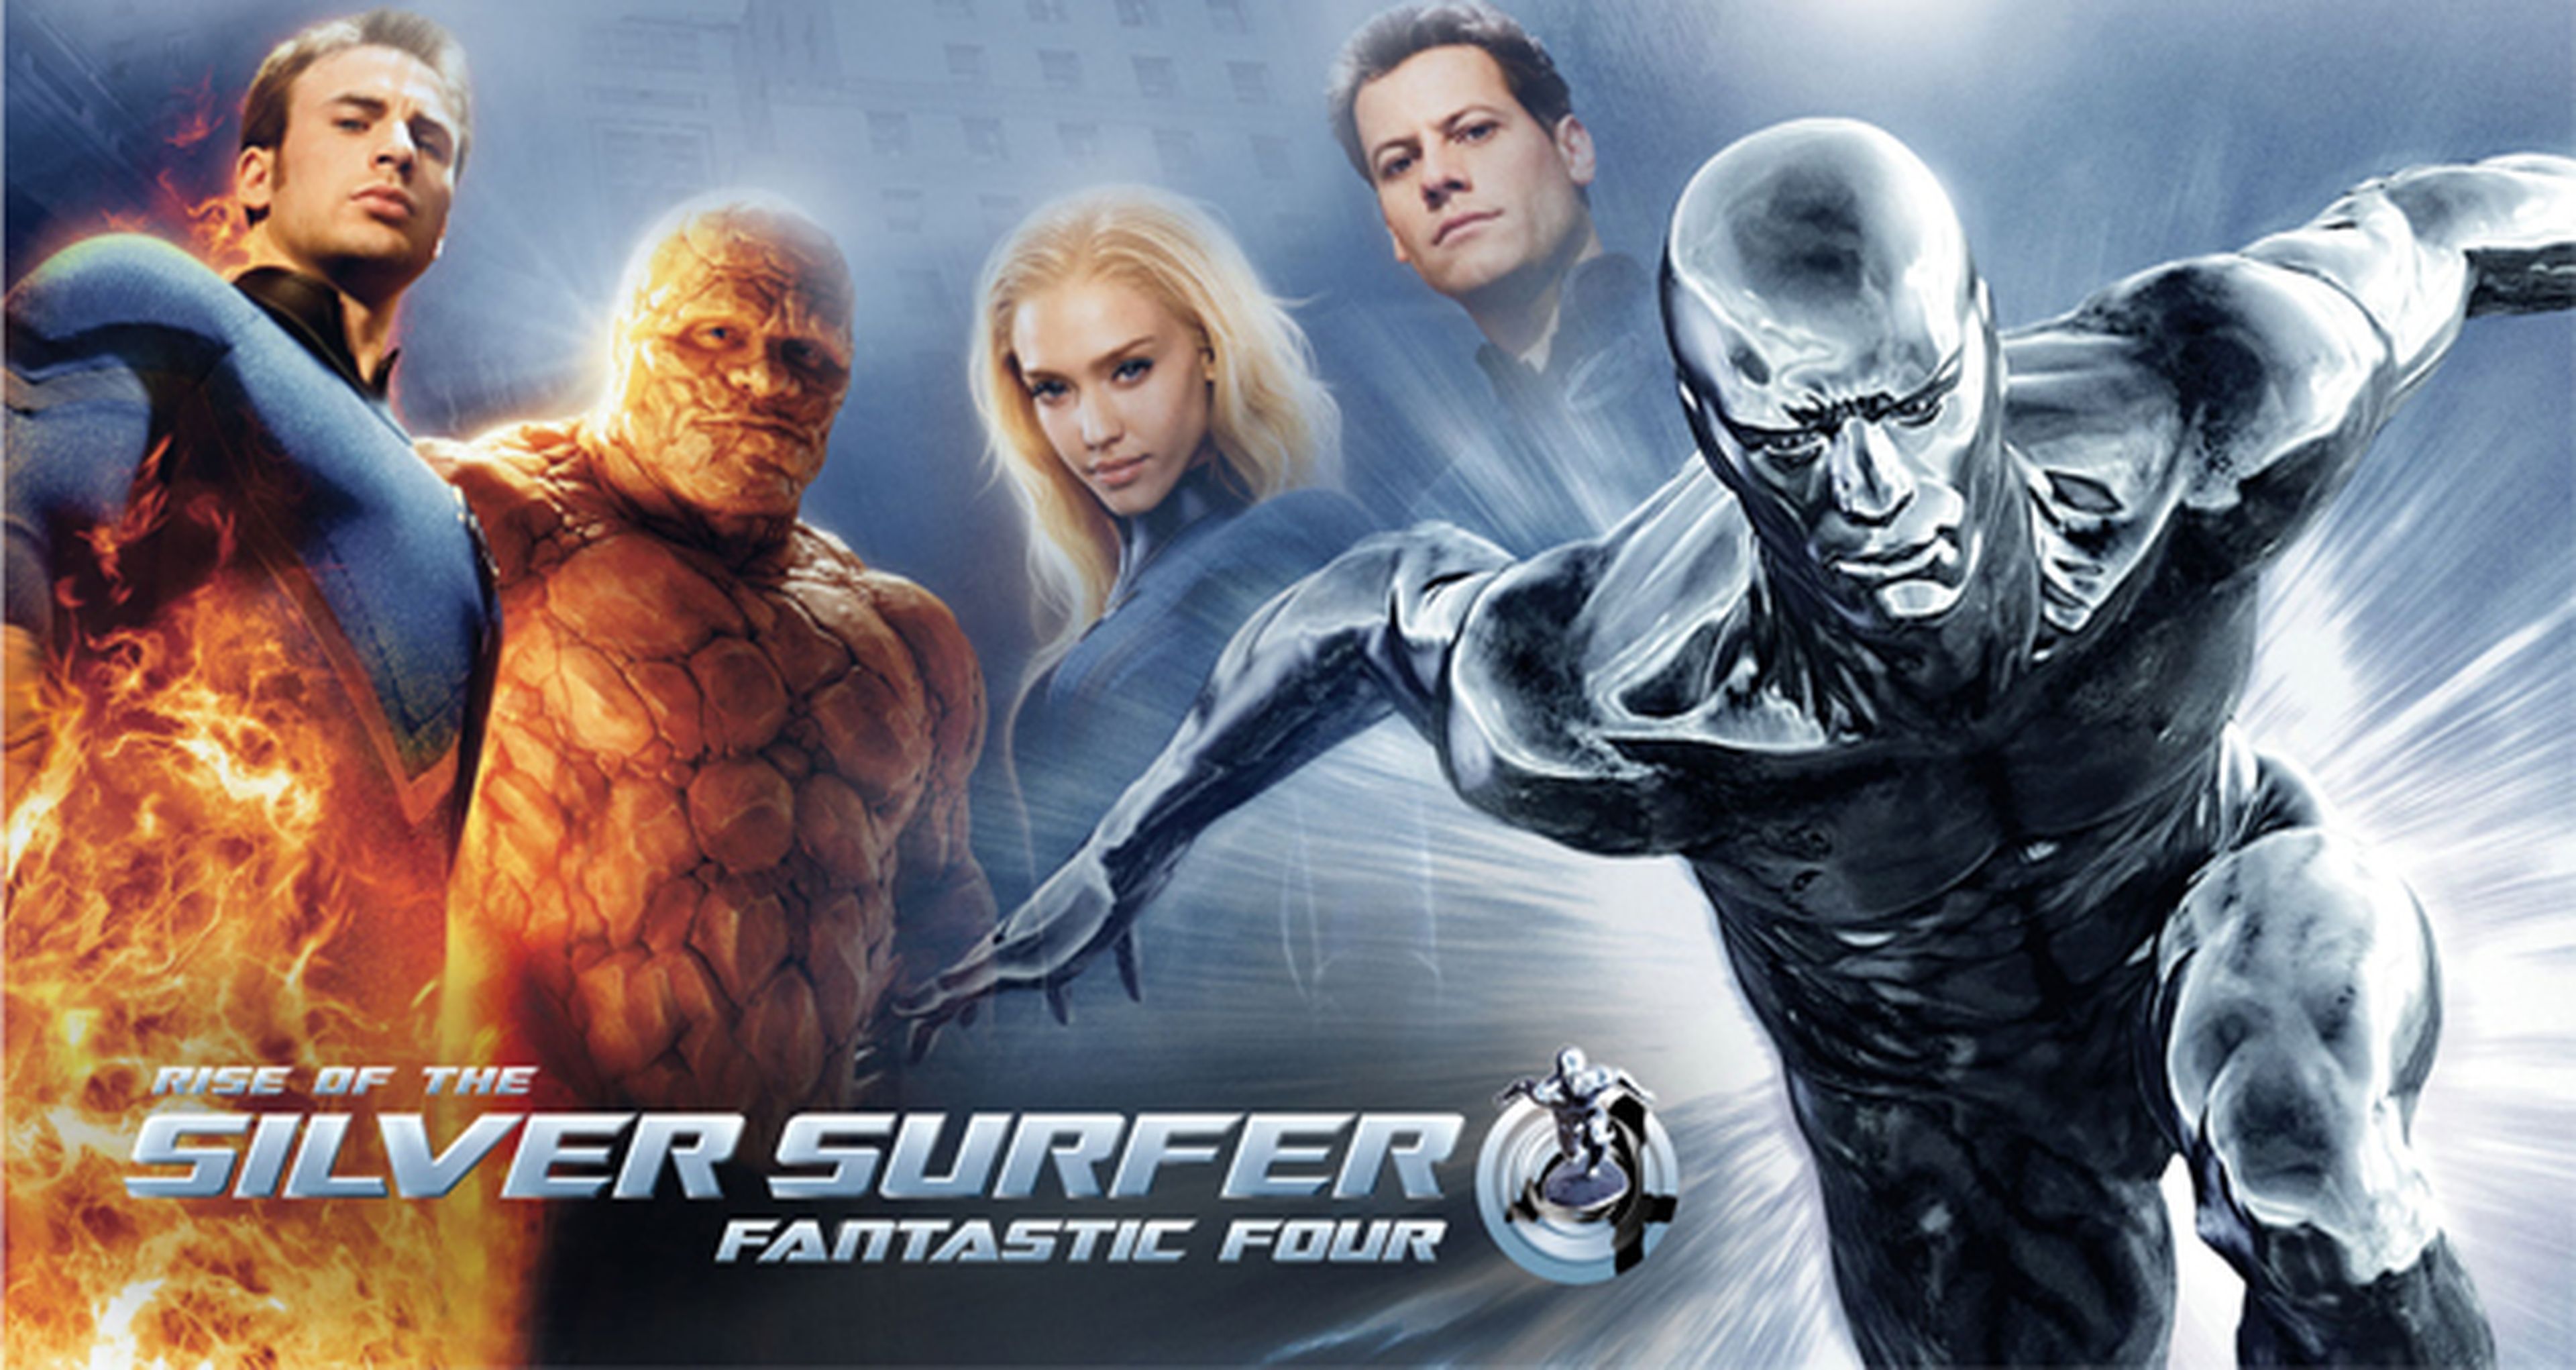 Cine de superhéroes: Los 4 Fantásticos y Silver Surfer